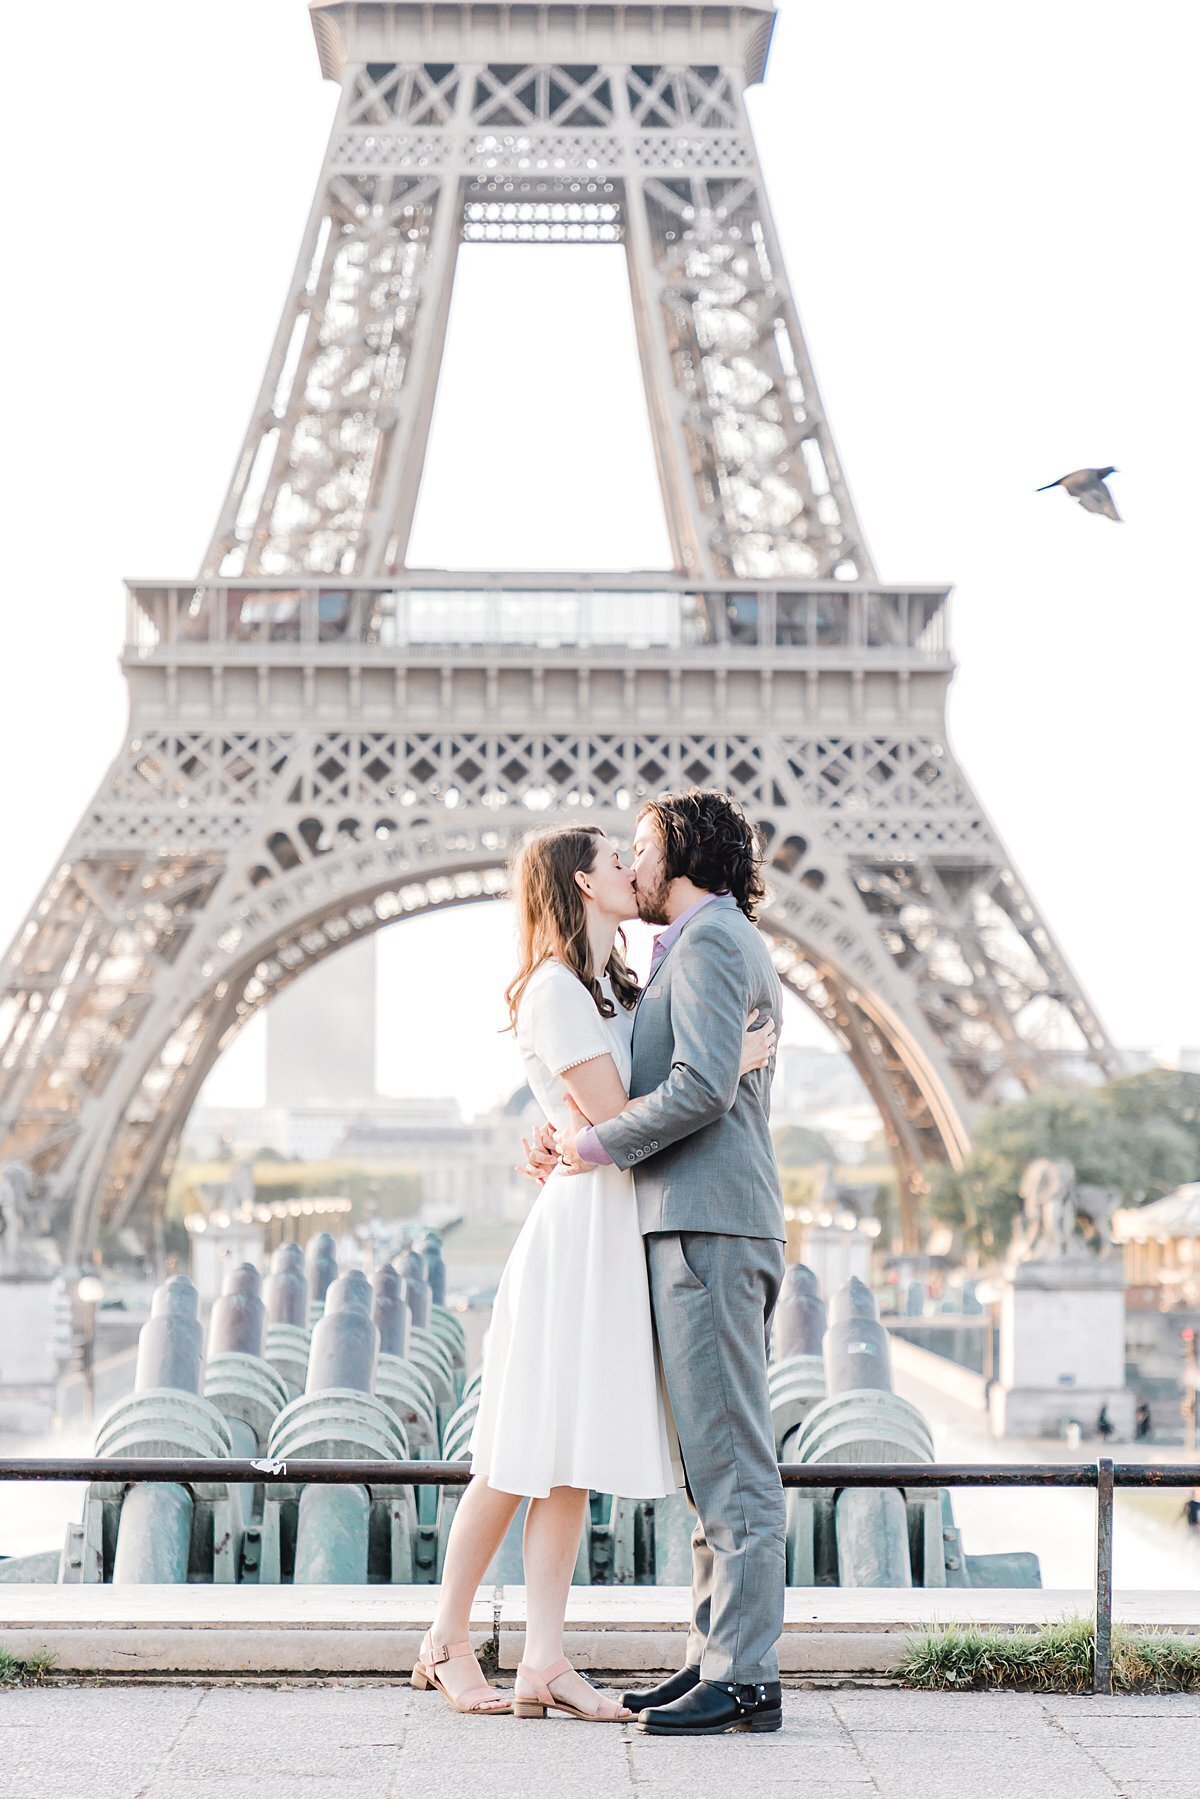 paris-honeymoon-photoshoot-5